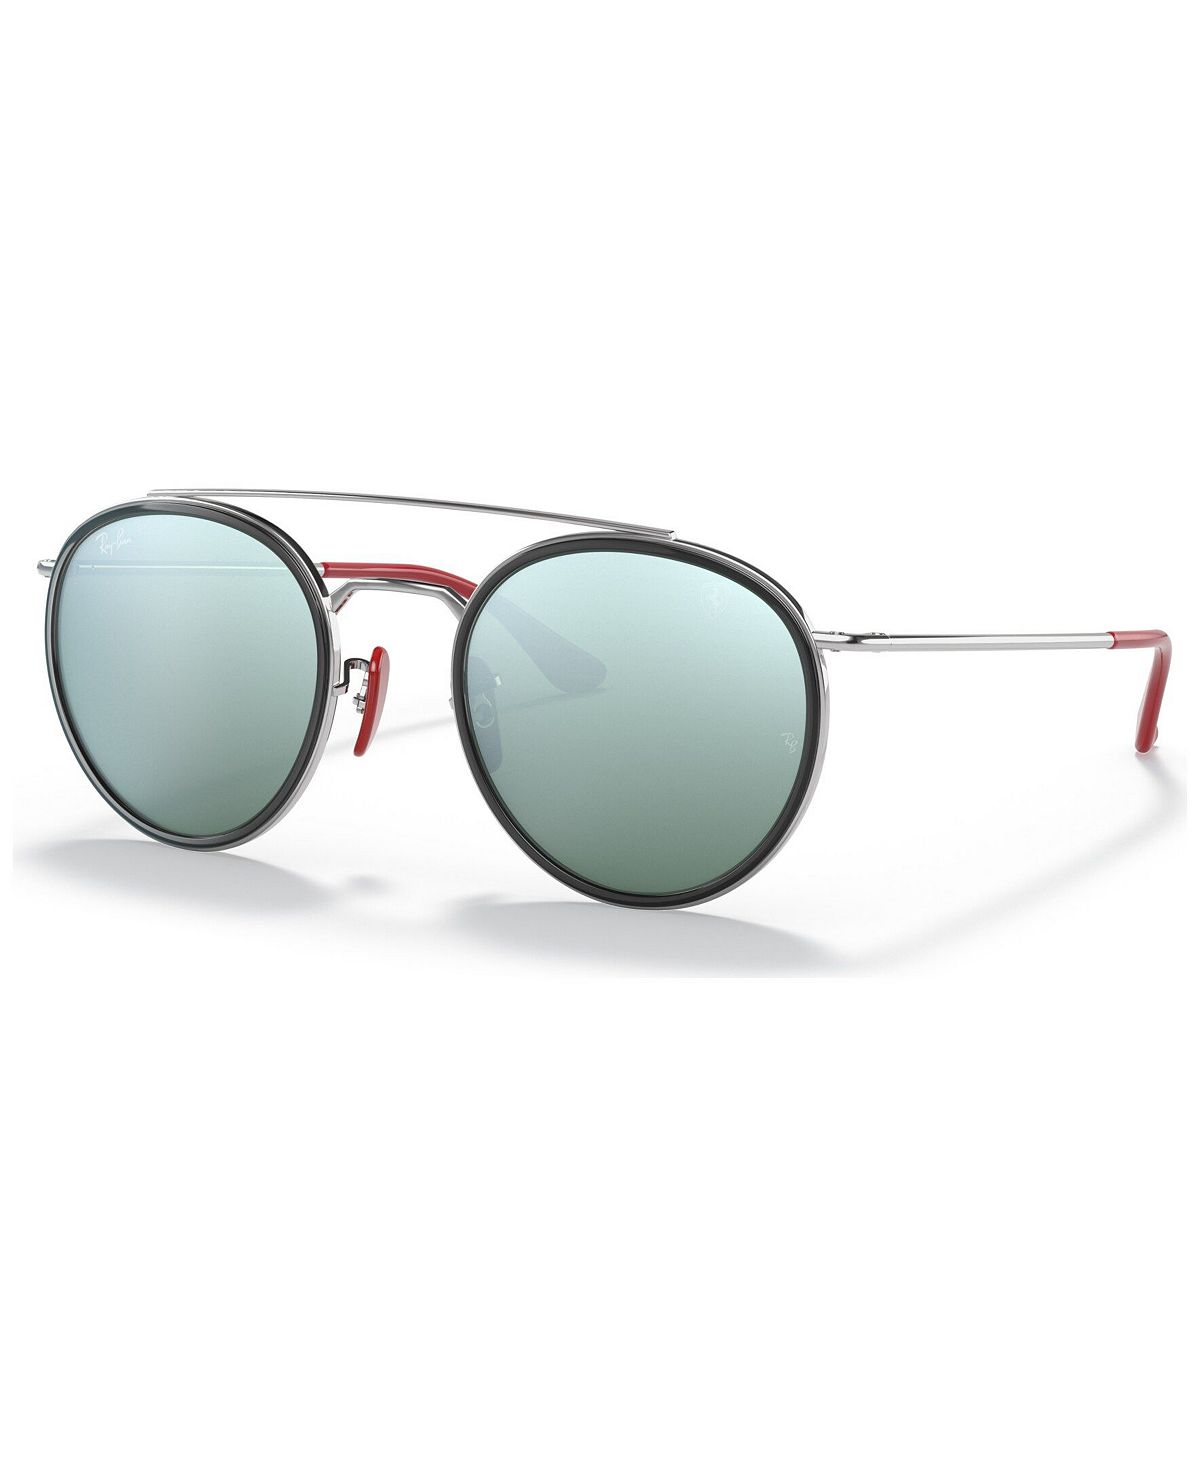 Мужские солнцезащитные очки, RB3647M Scuderia Ferrari Collection 51 Ray-Ban